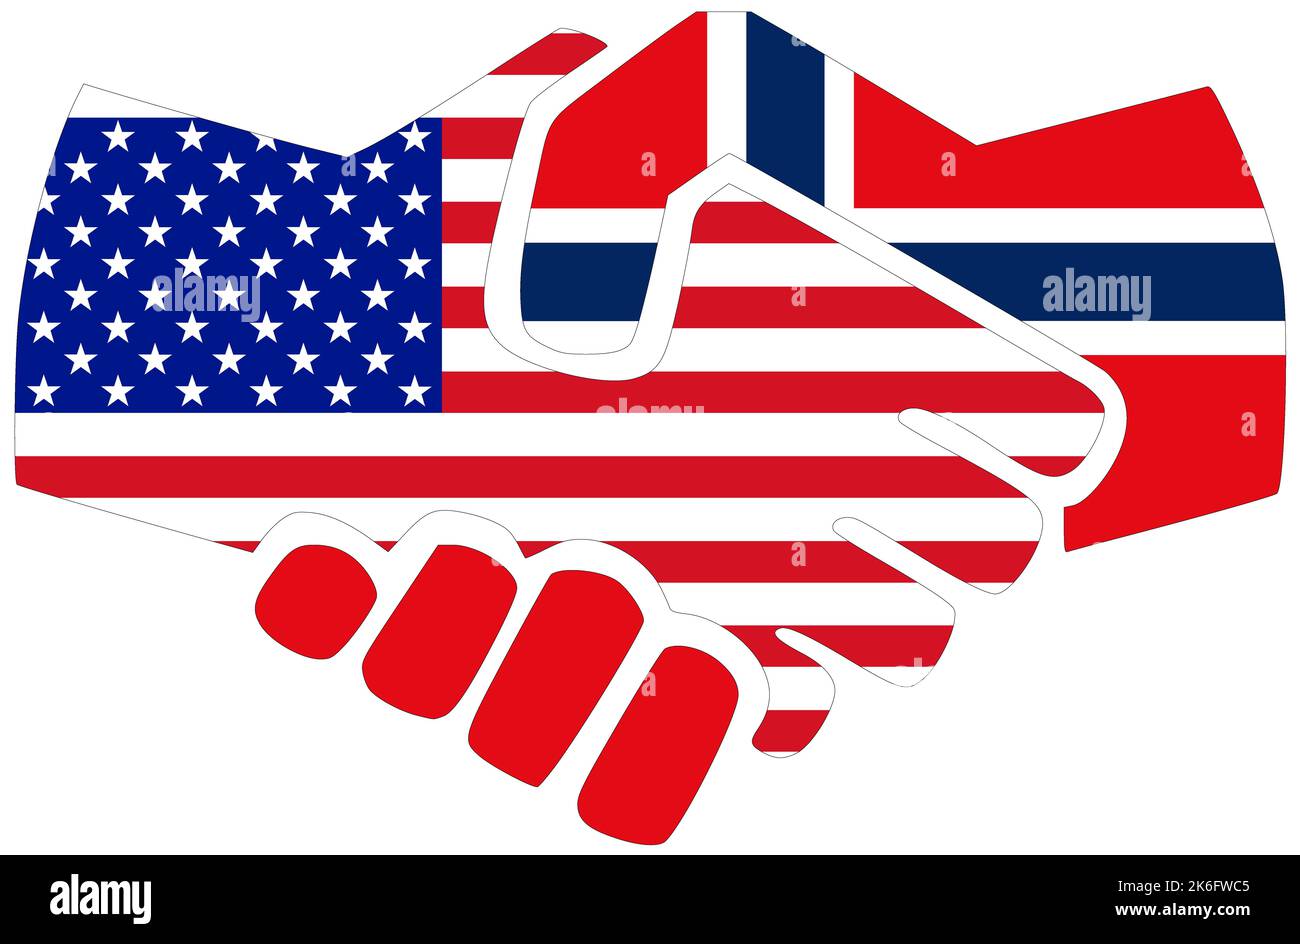 USA - Norvège : poignée de main, symbole d'accord ou d'amitié Banque D'Images